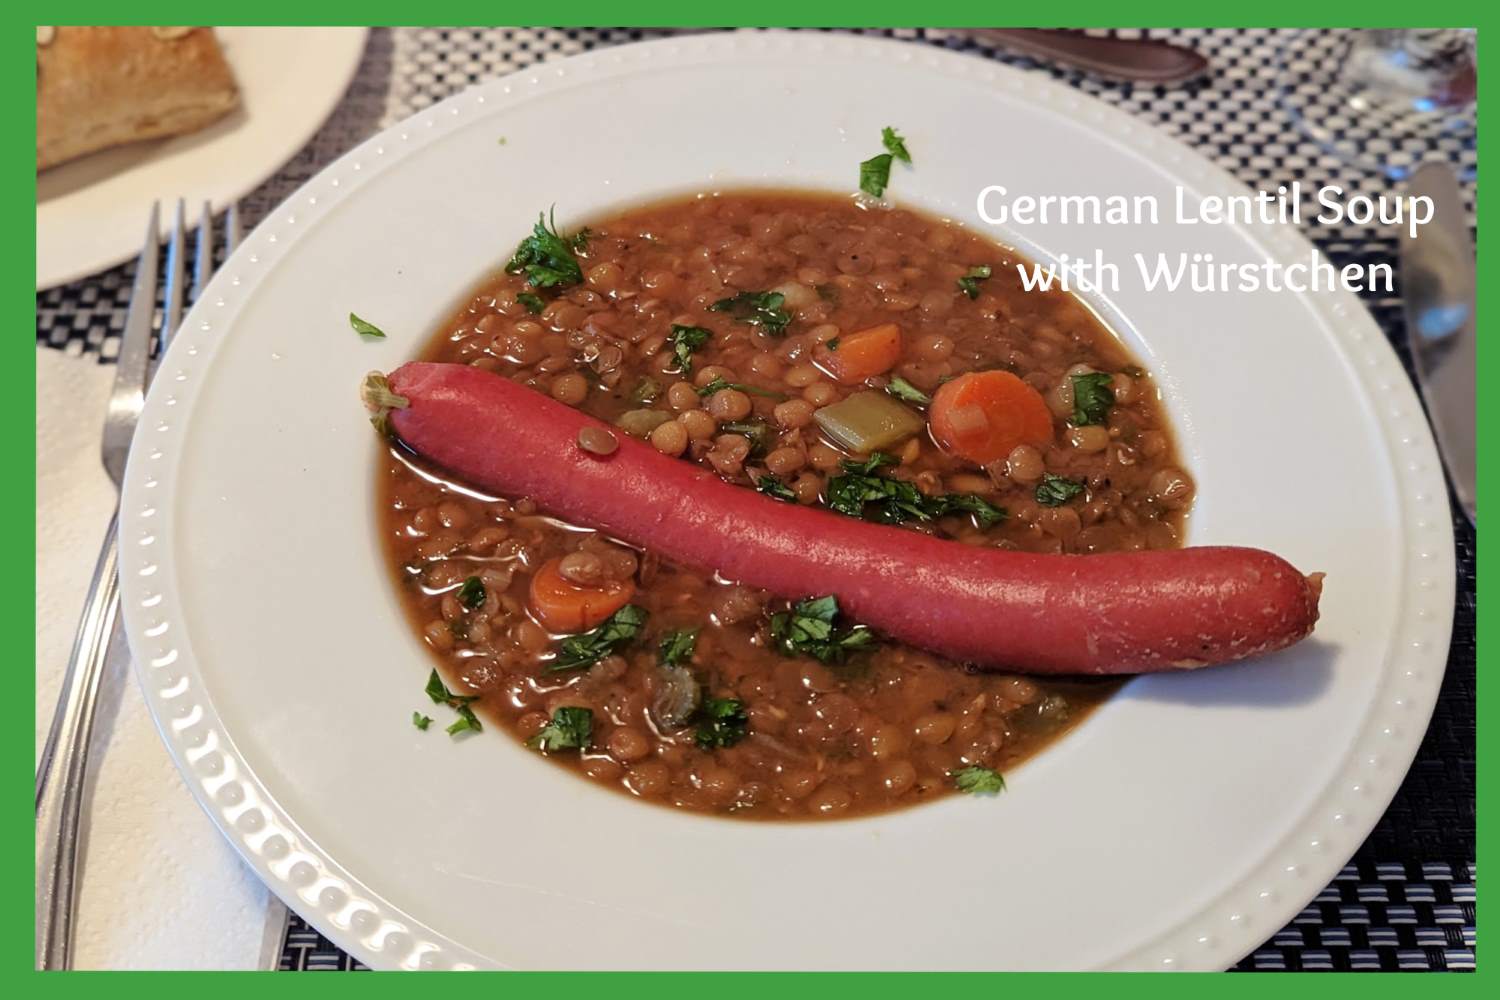 German Lentil Soup with Würstchen